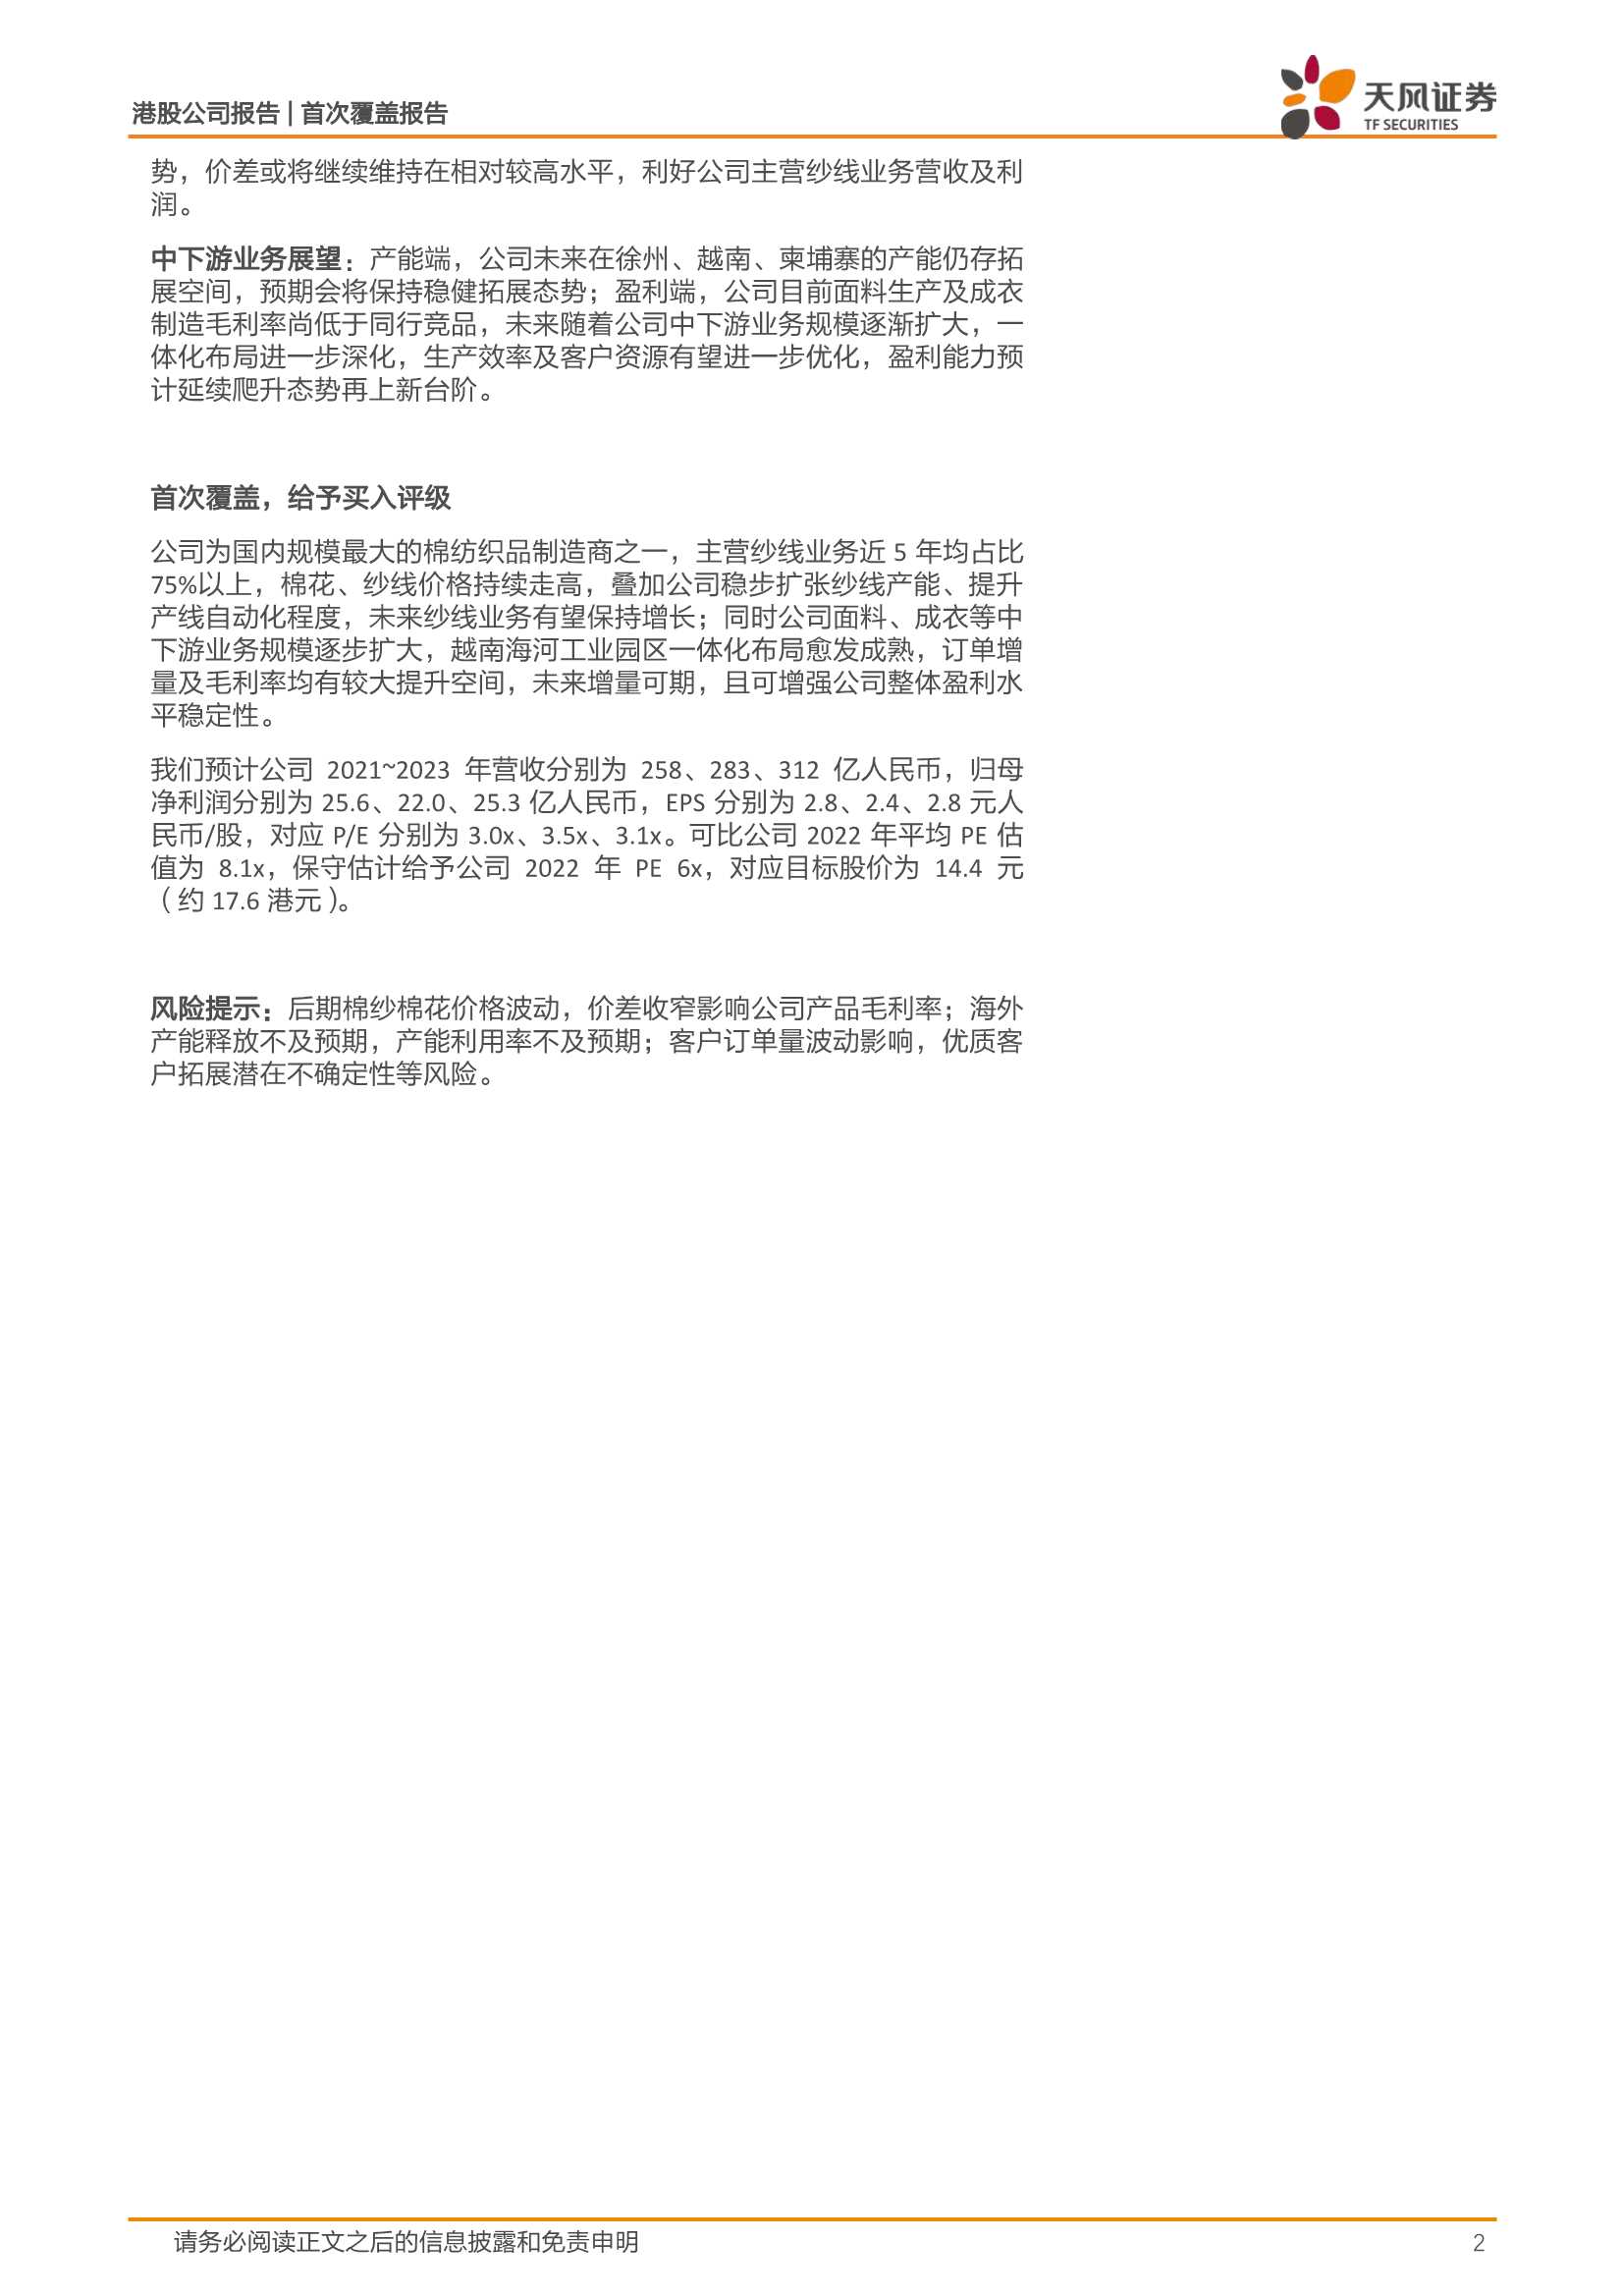 天风证券-天虹纺织-2678.HK-海外拓展稳提主业盈利，一体化布局赋能二次成长-20220211-22页